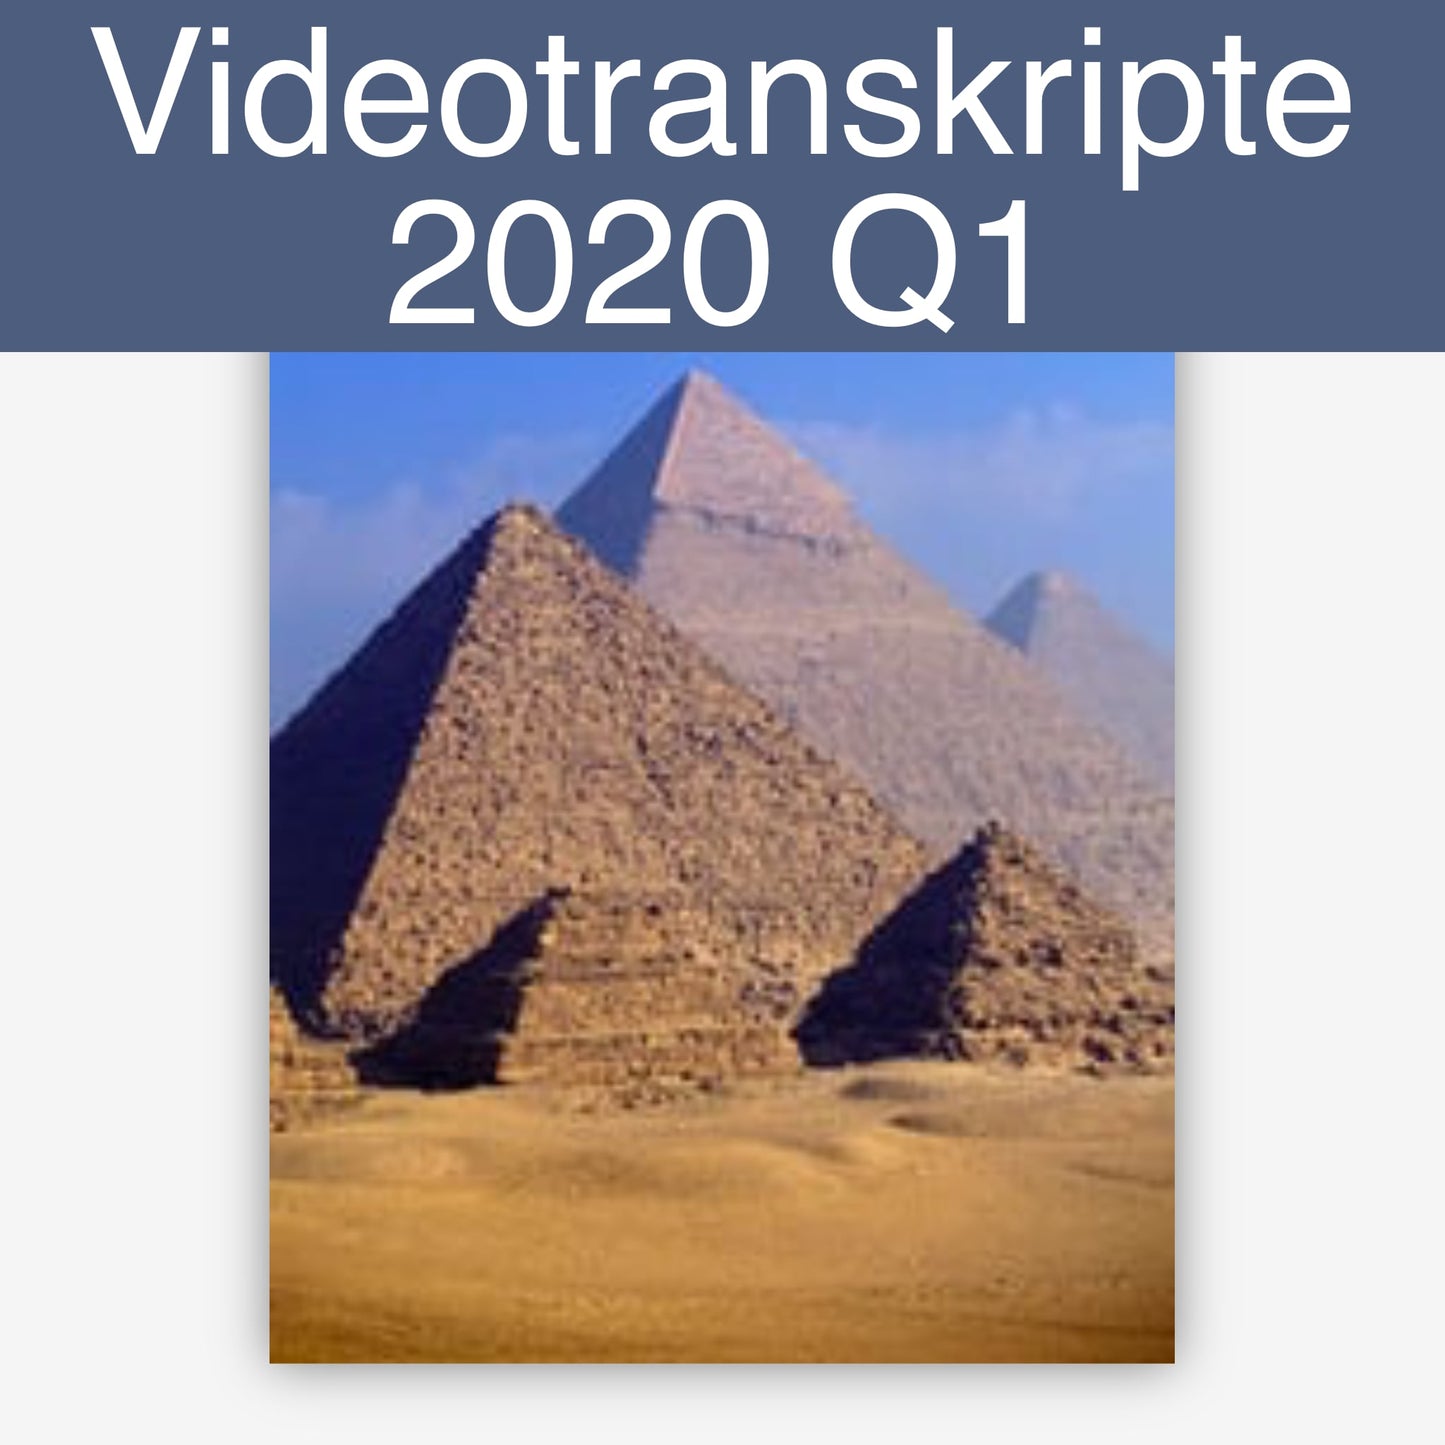 Videotranskripte 2020 Q1